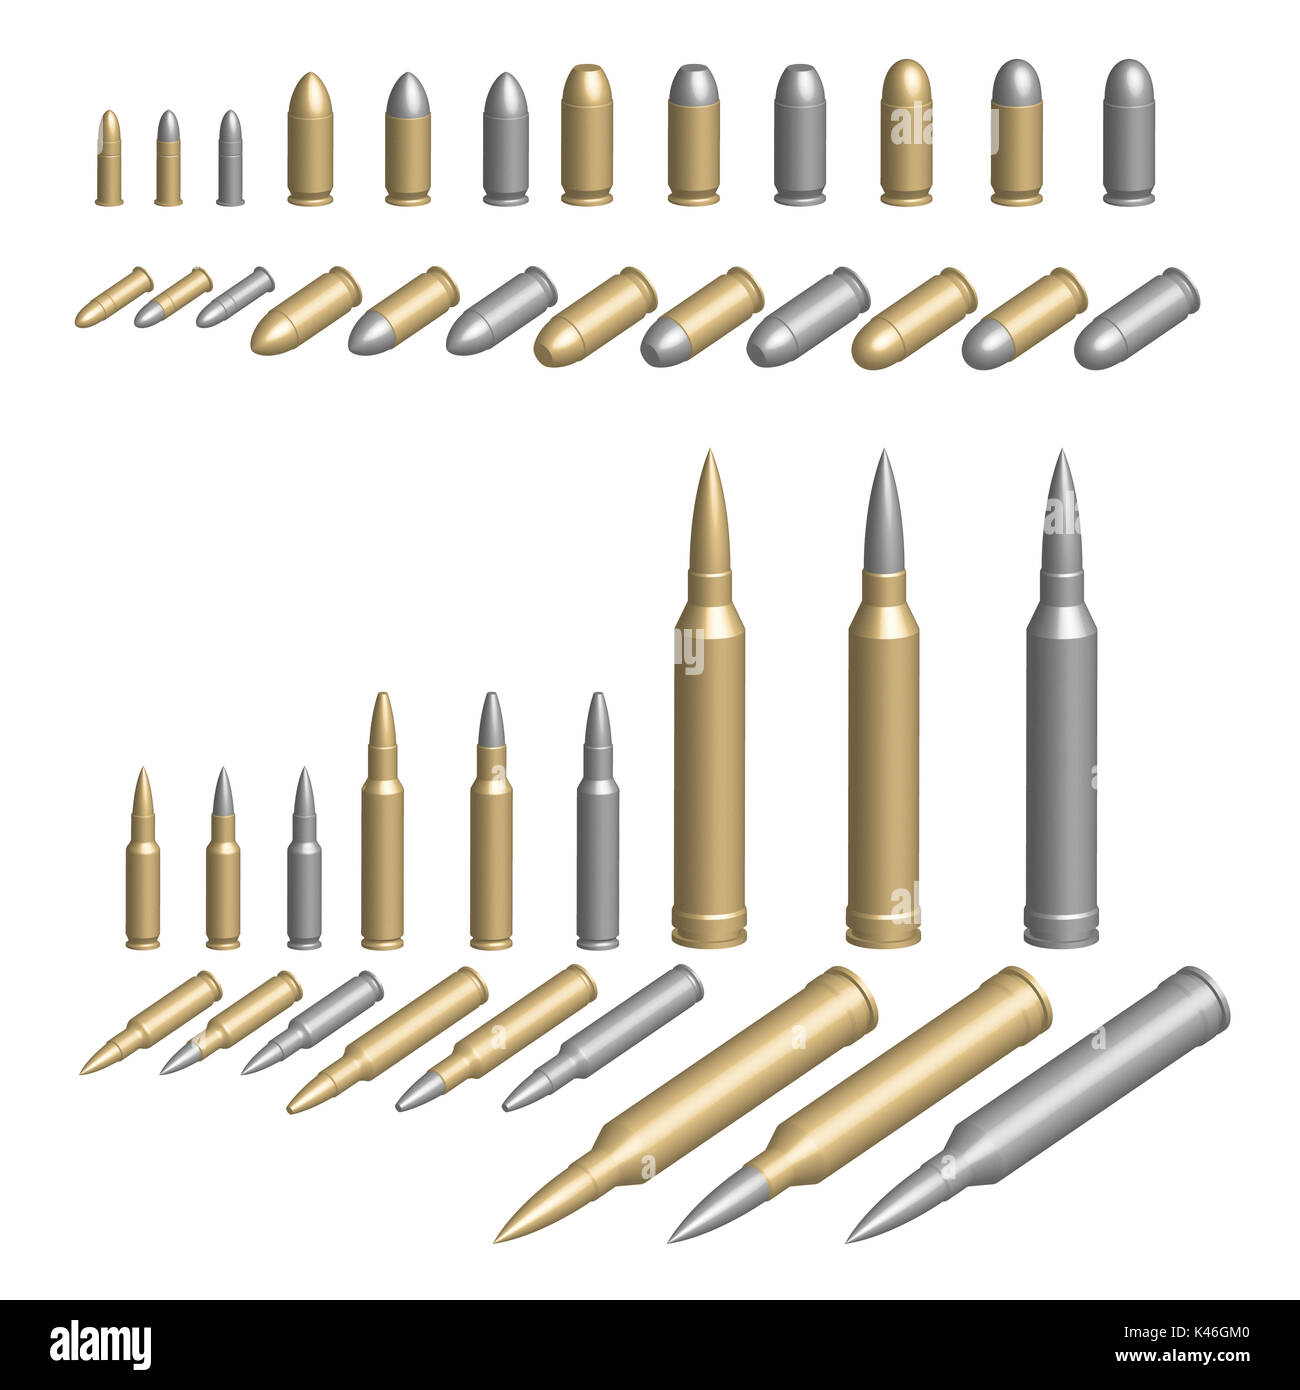 Vielzahl von Gewehrkugeln in Messing, Silber oder Stahl Gehäuse ill. Stockfoto